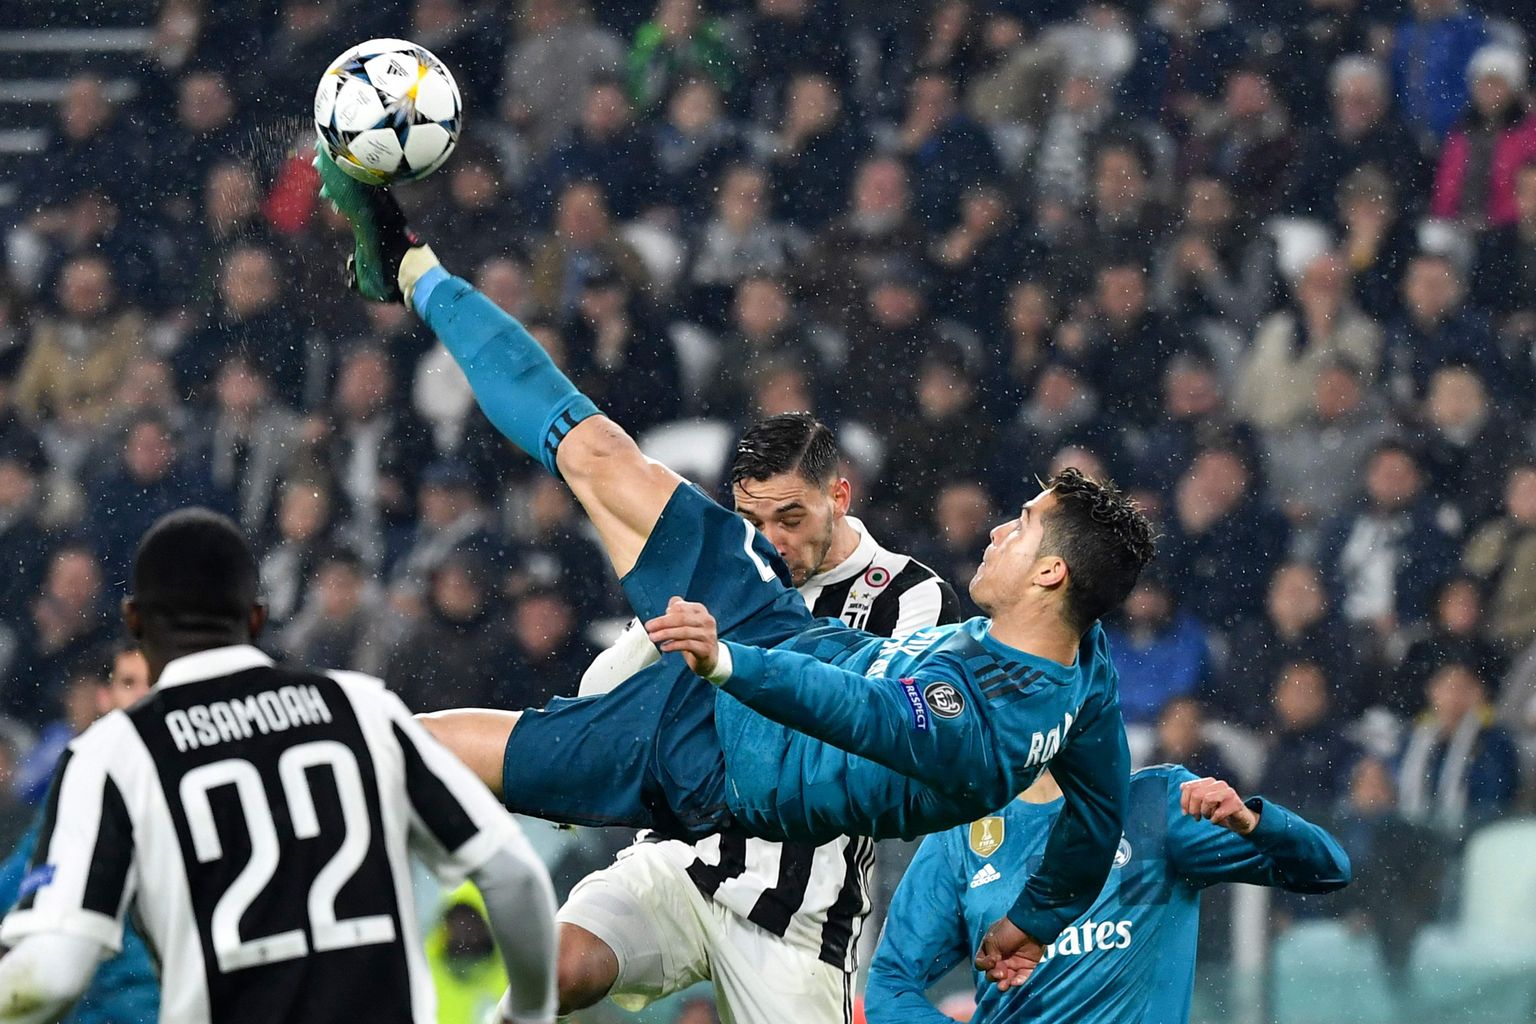 Cristiano Ronaldo näeb palli, astub paar sammu ettepoole, paneb jalad paika ja kui mänguvahend just õige kohas, kerkib õhku. Sünnib värav, mis jääb igaveseks jalgpallisõprade meelile ja keelile.